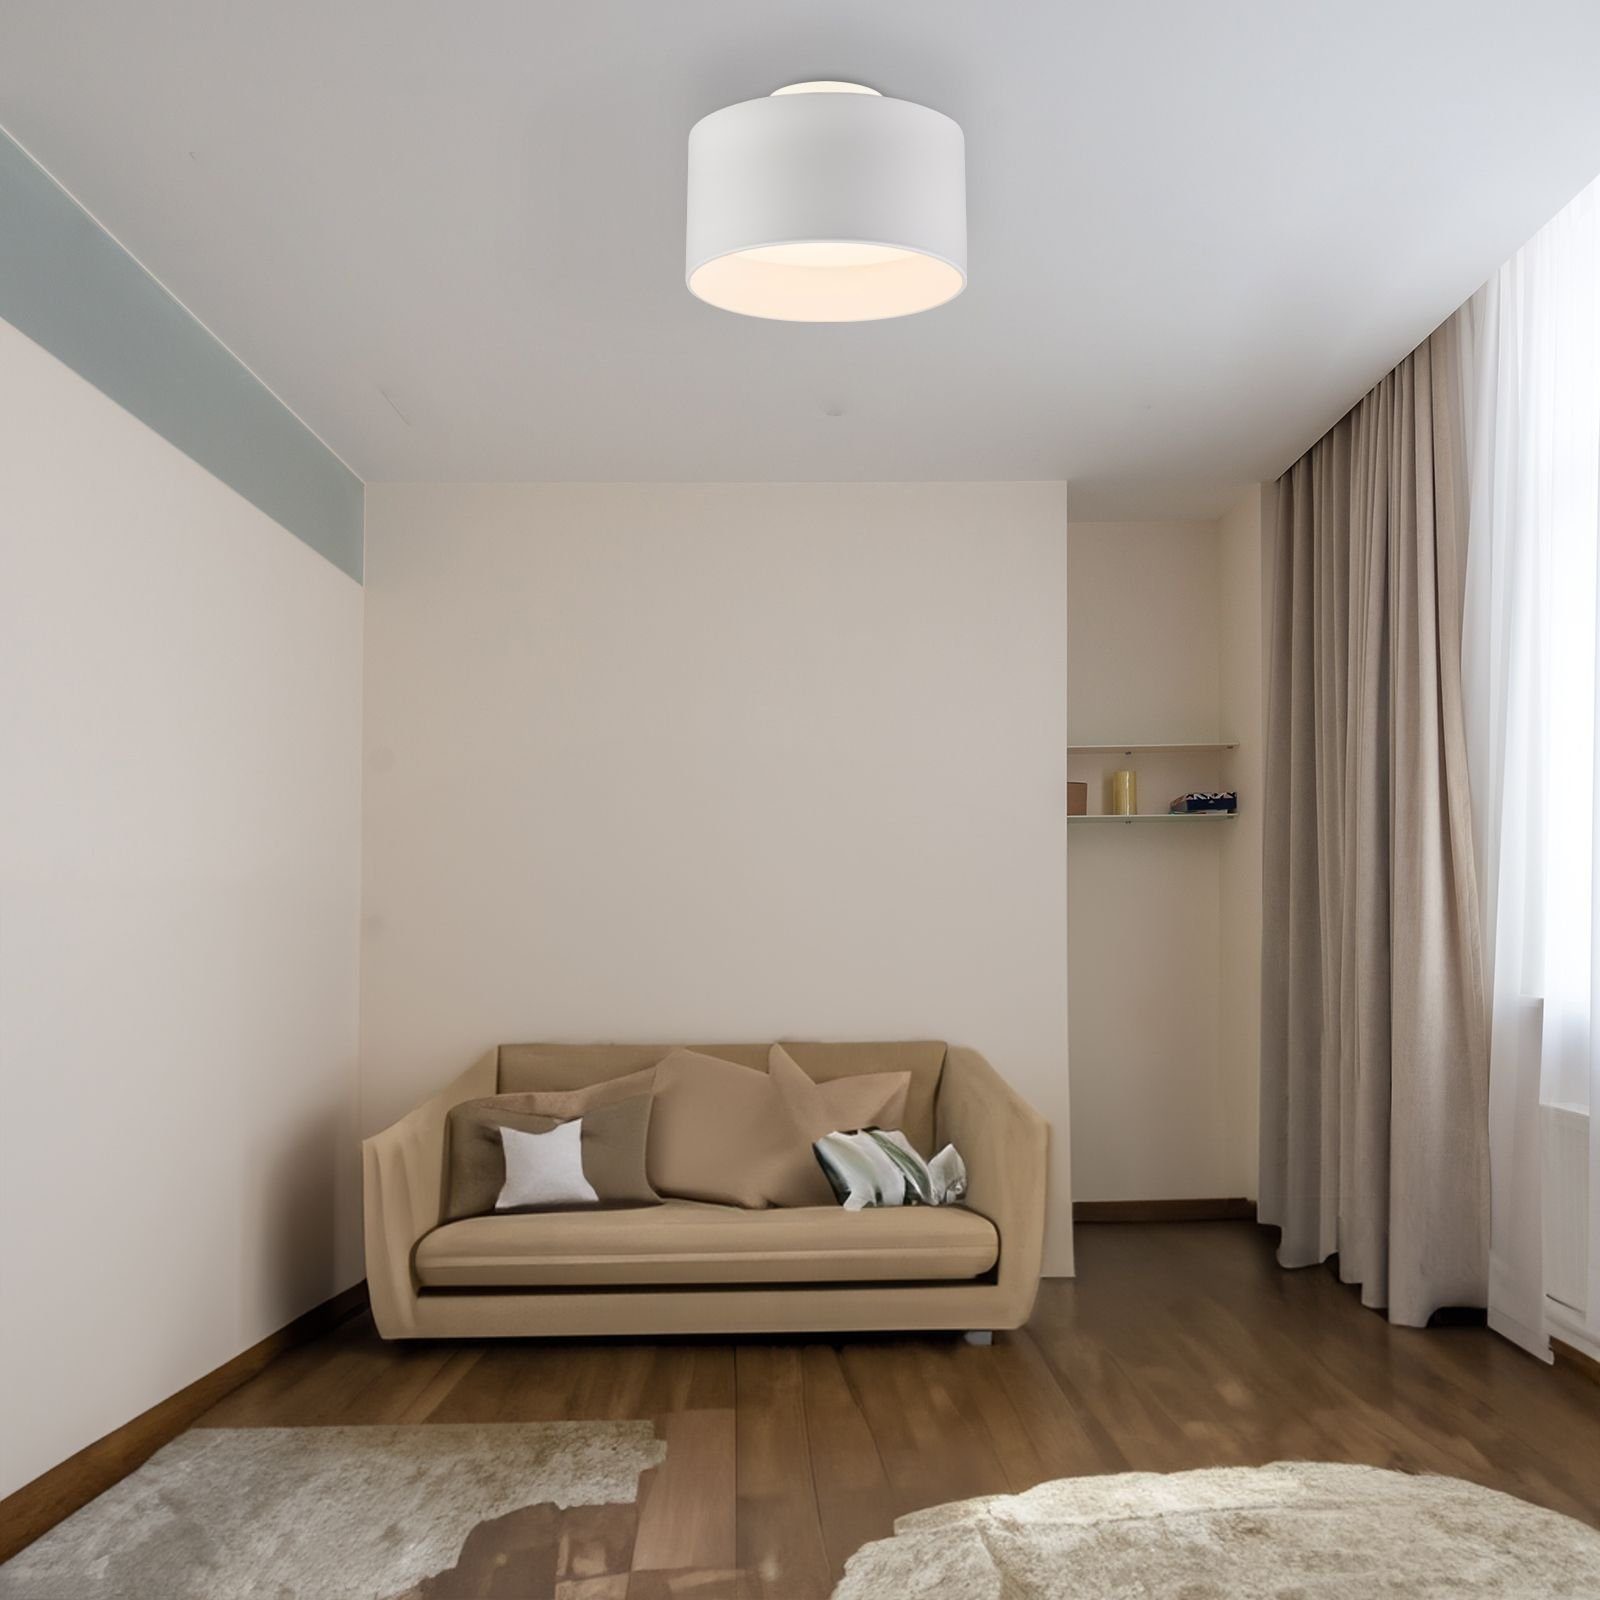 Warmweiß, weiß, modern, Esszimmer, Deckenleuchte LED, Globo fest Warmweiß LED Wohnzimmer, Küche GLOBO integriert, Backlight, Schlafzimmer Deckenlampe Deckenleuchte Flur